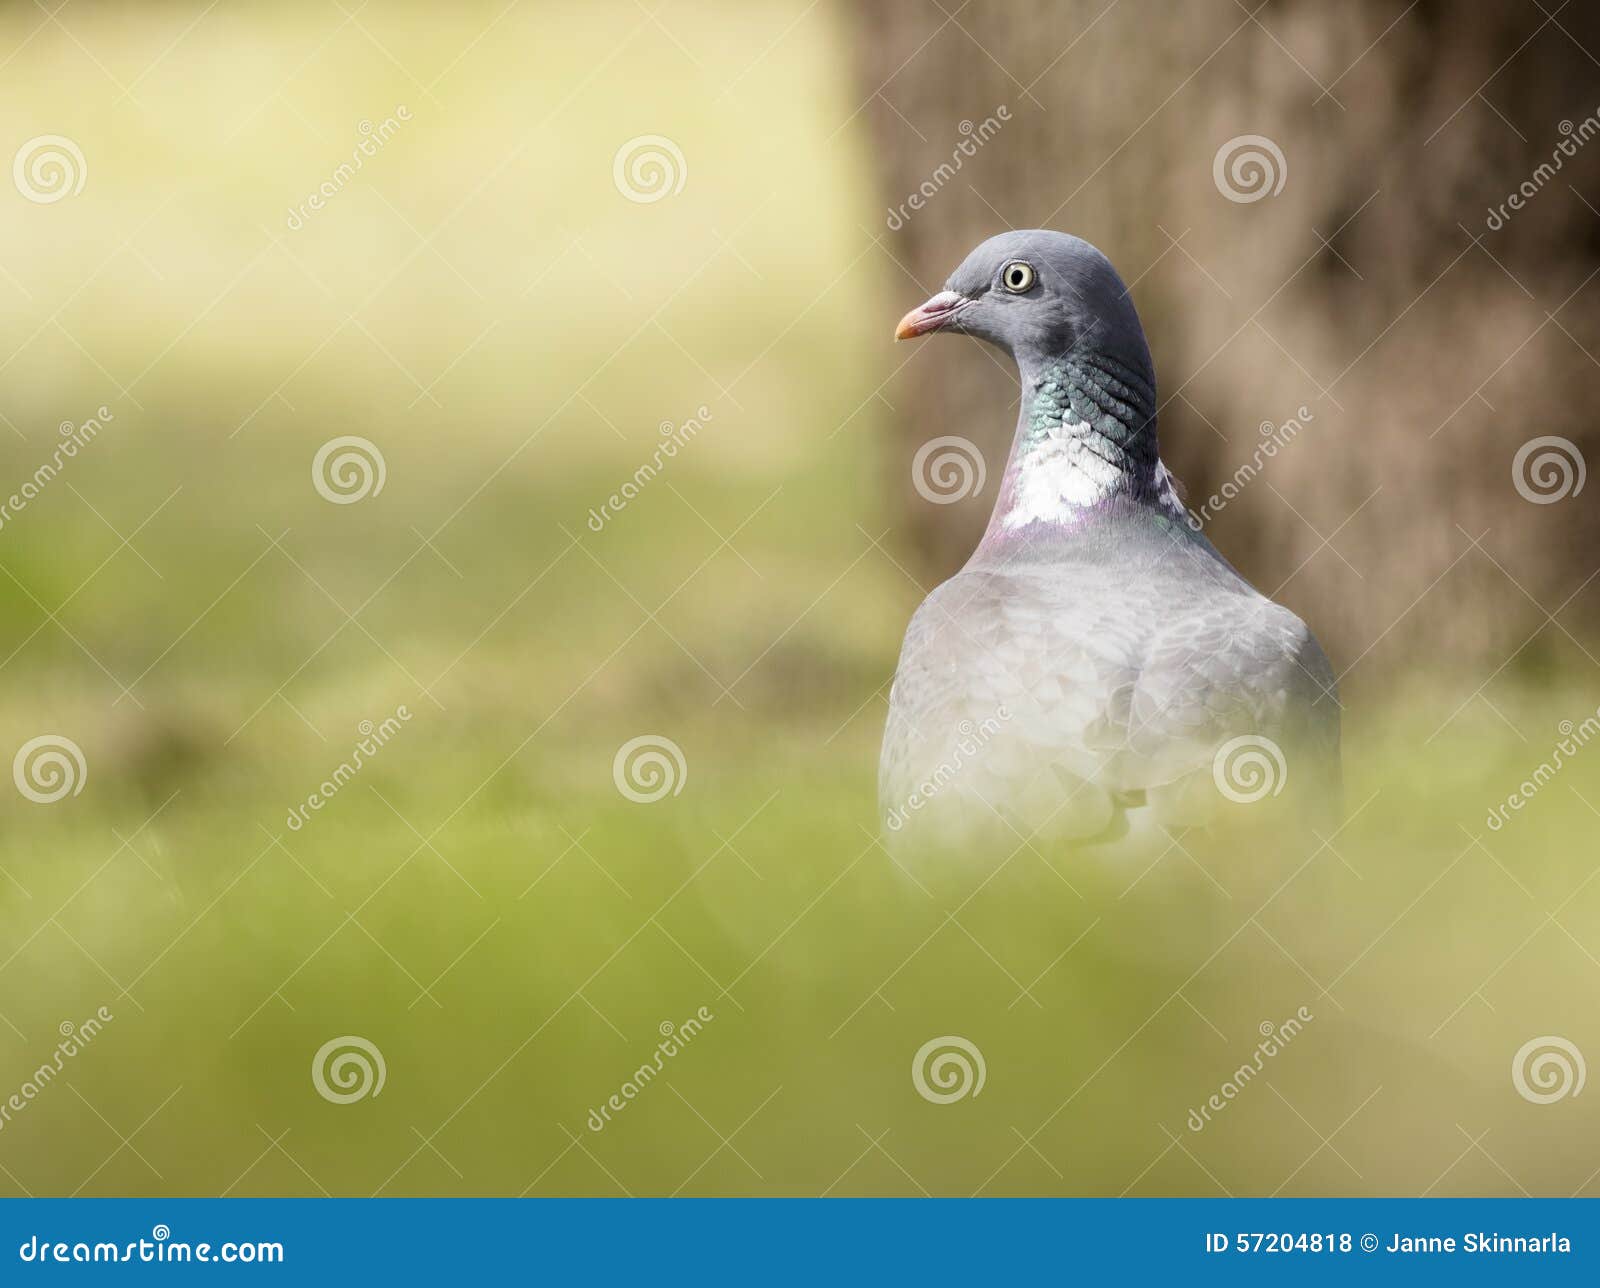 斑尾林鸽正面图 库存照片. 图片 包括有 视图, 查出, 一个, 本质, 灰色, 关闭, 鸽子, 背包 - 148729502